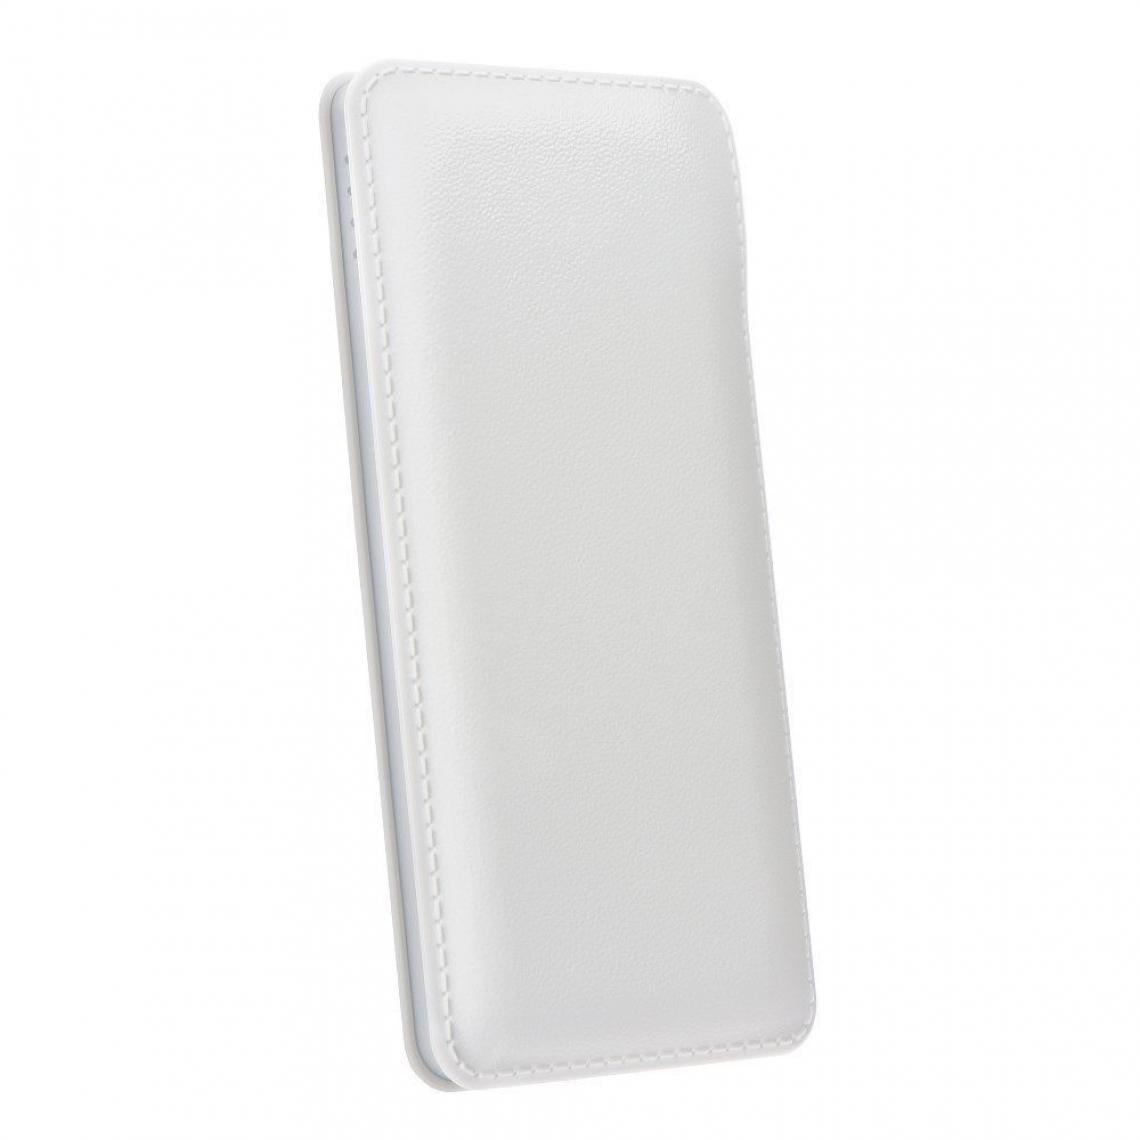 Ozzzo - Chargeur batterie externe 10000mAh powerbank ozzzo blanc pour LG W31 - Autres accessoires smartphone